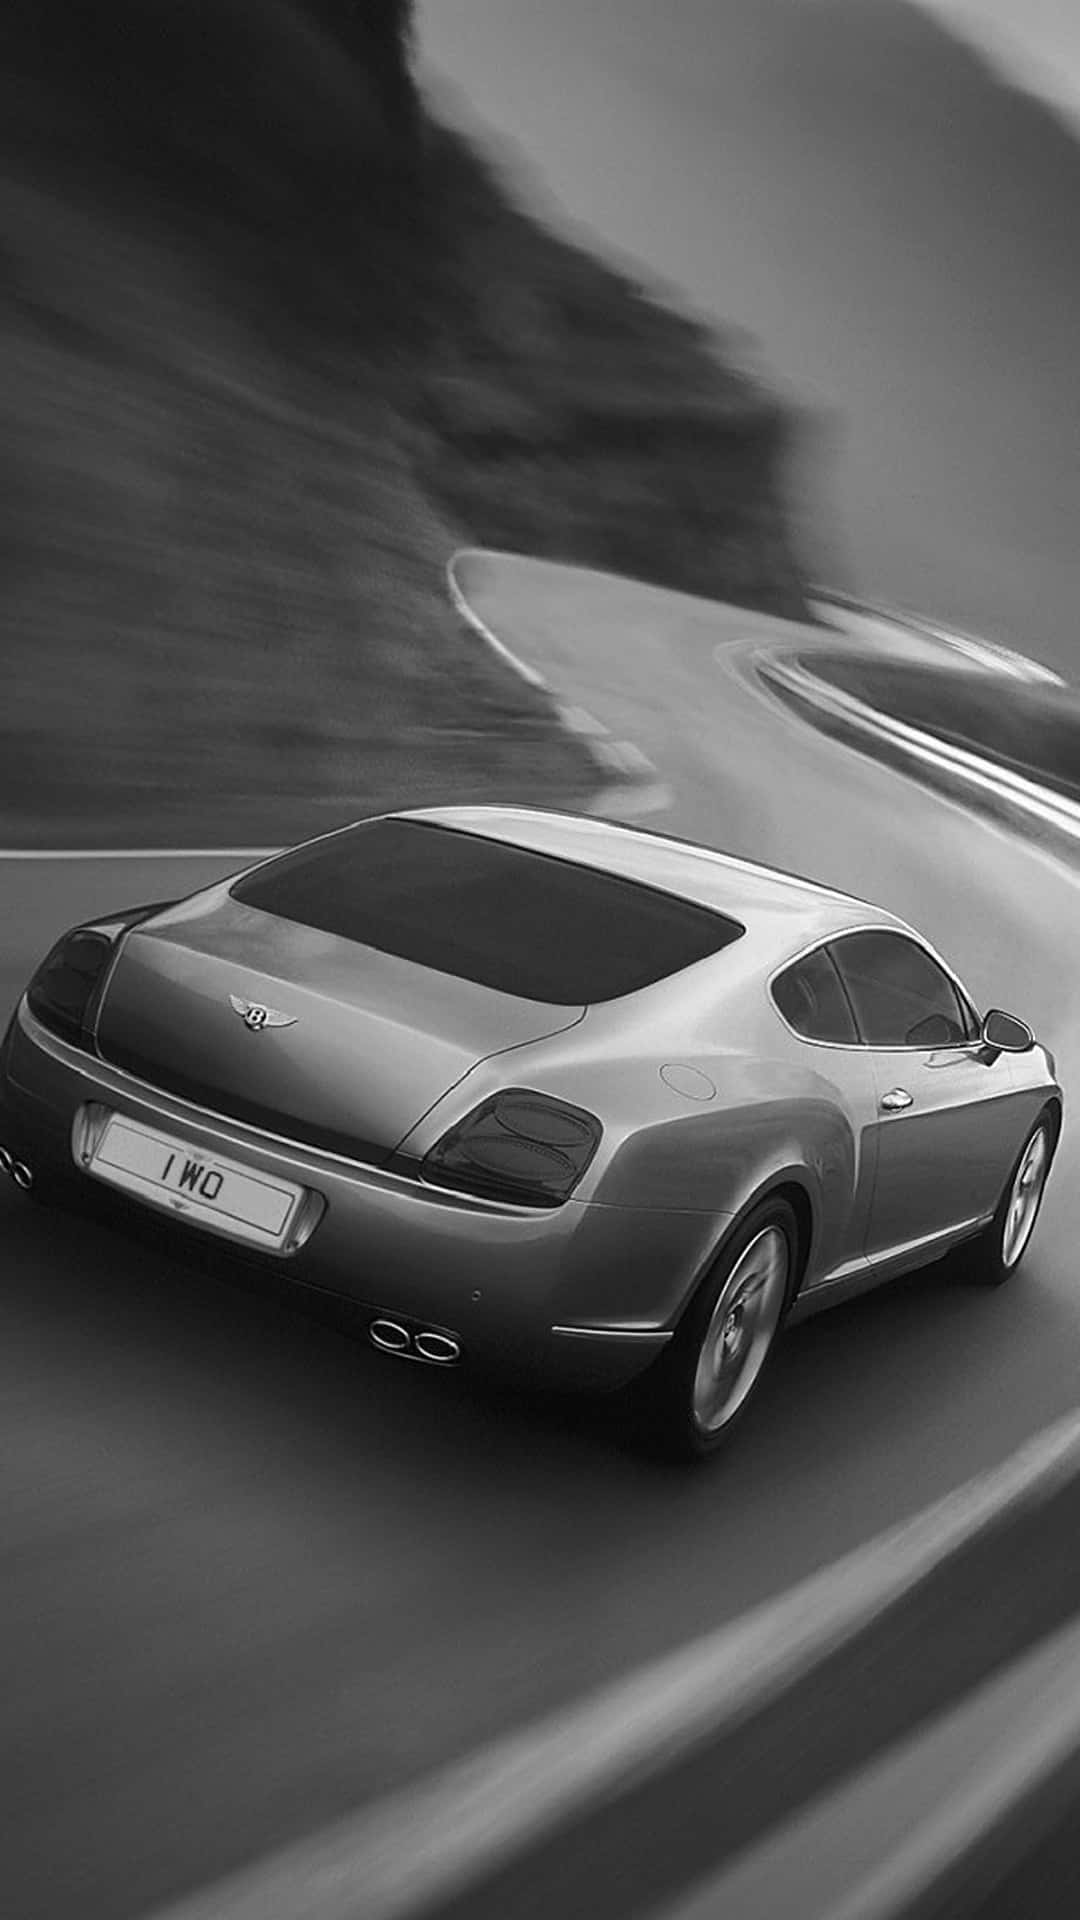 Speeding 2017 Model Of Bentley iPhone Wallpaper